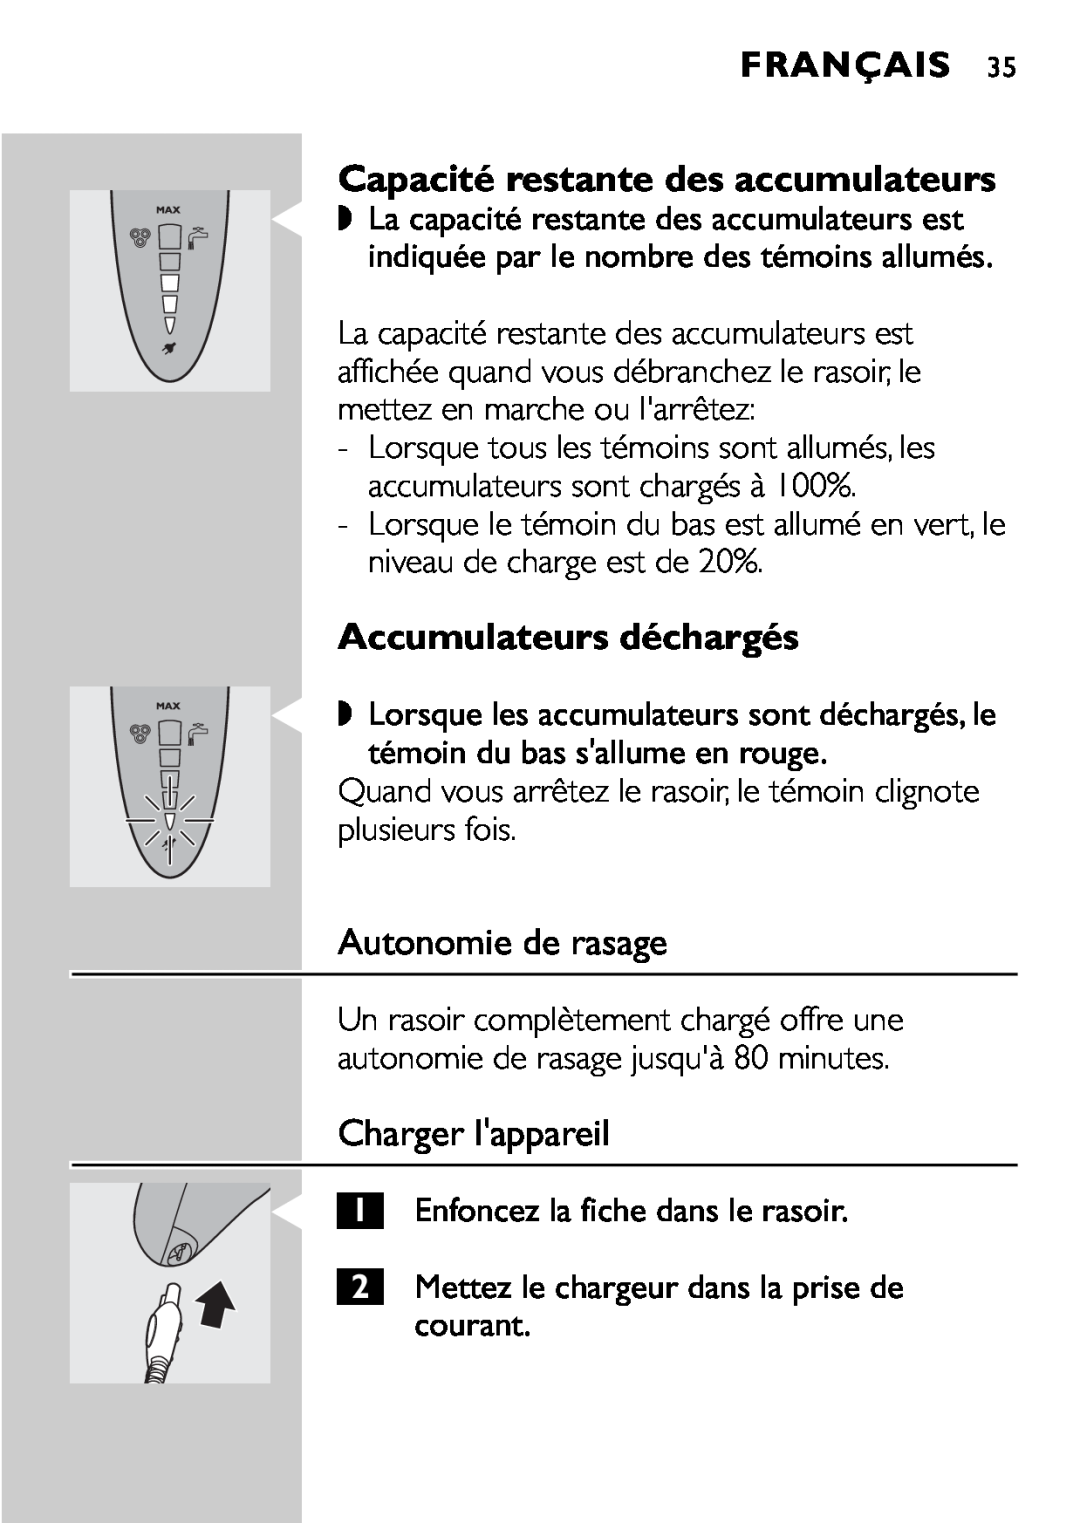 Philips HQ9161, HQ9160 manual Accumulateurs déchargés, Autonomie de rasage, Charger lappareil, Français 